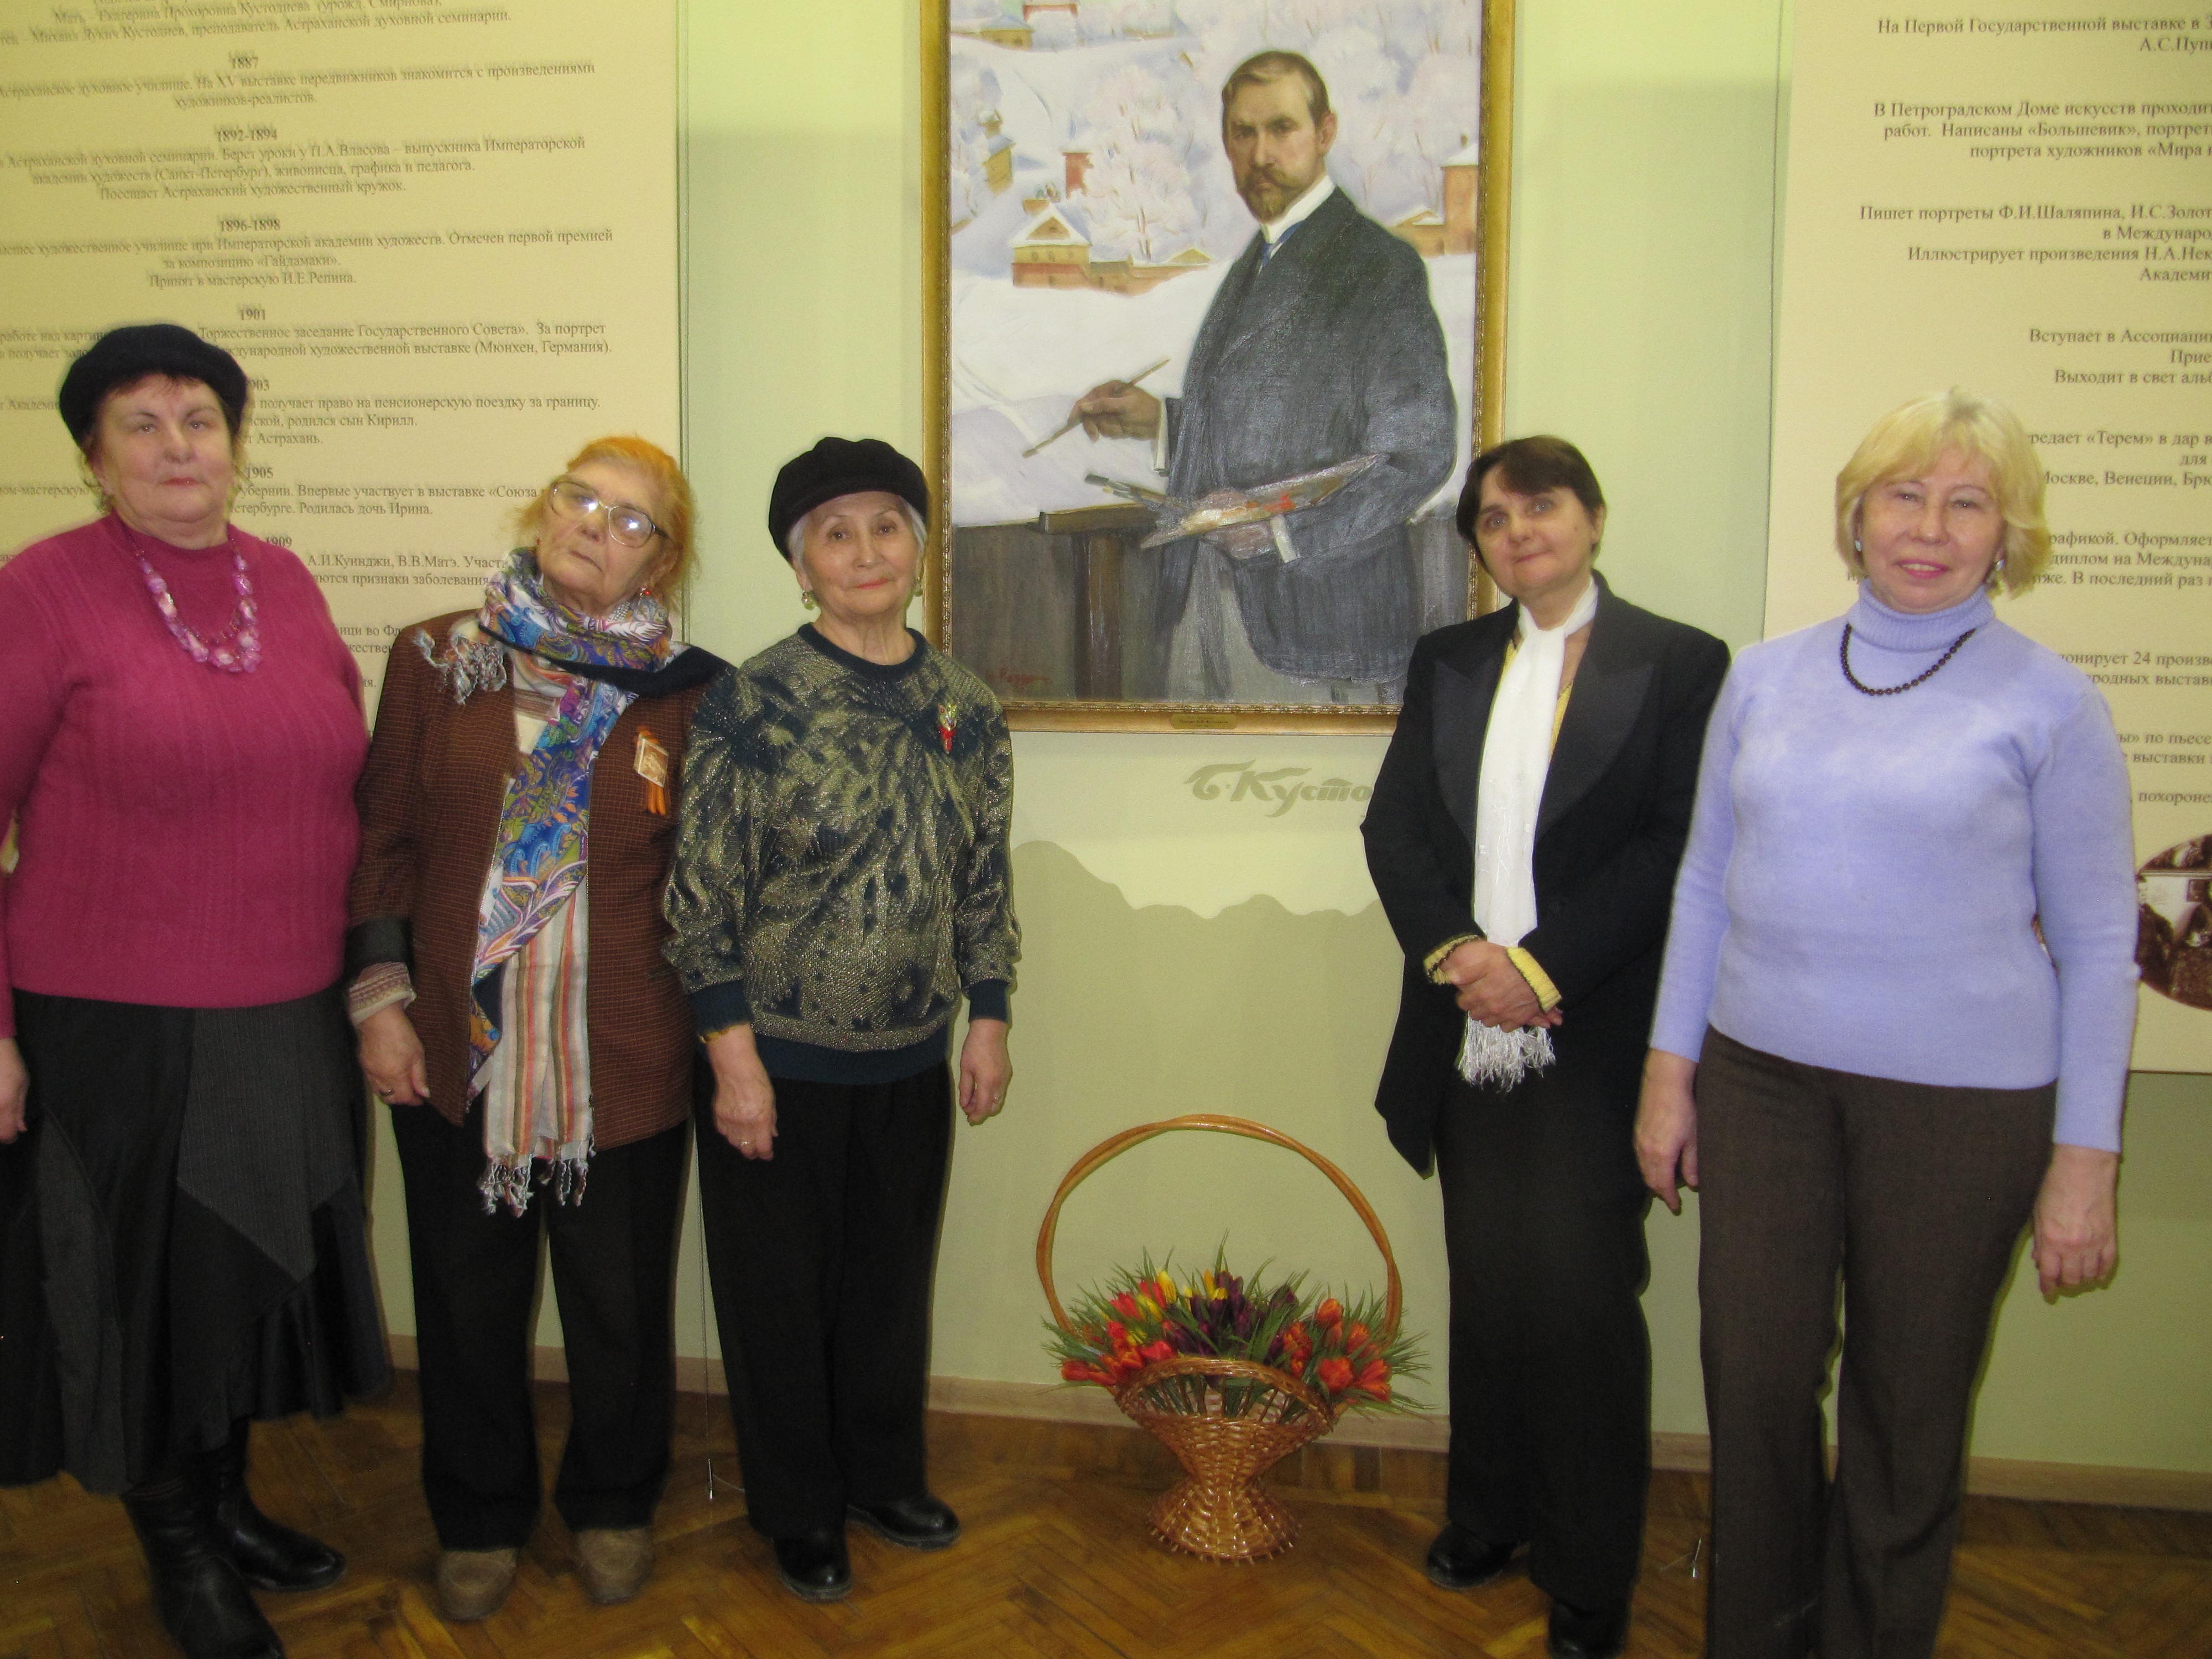 Пенсионеры посетили выставку работ Филиппа Малявина